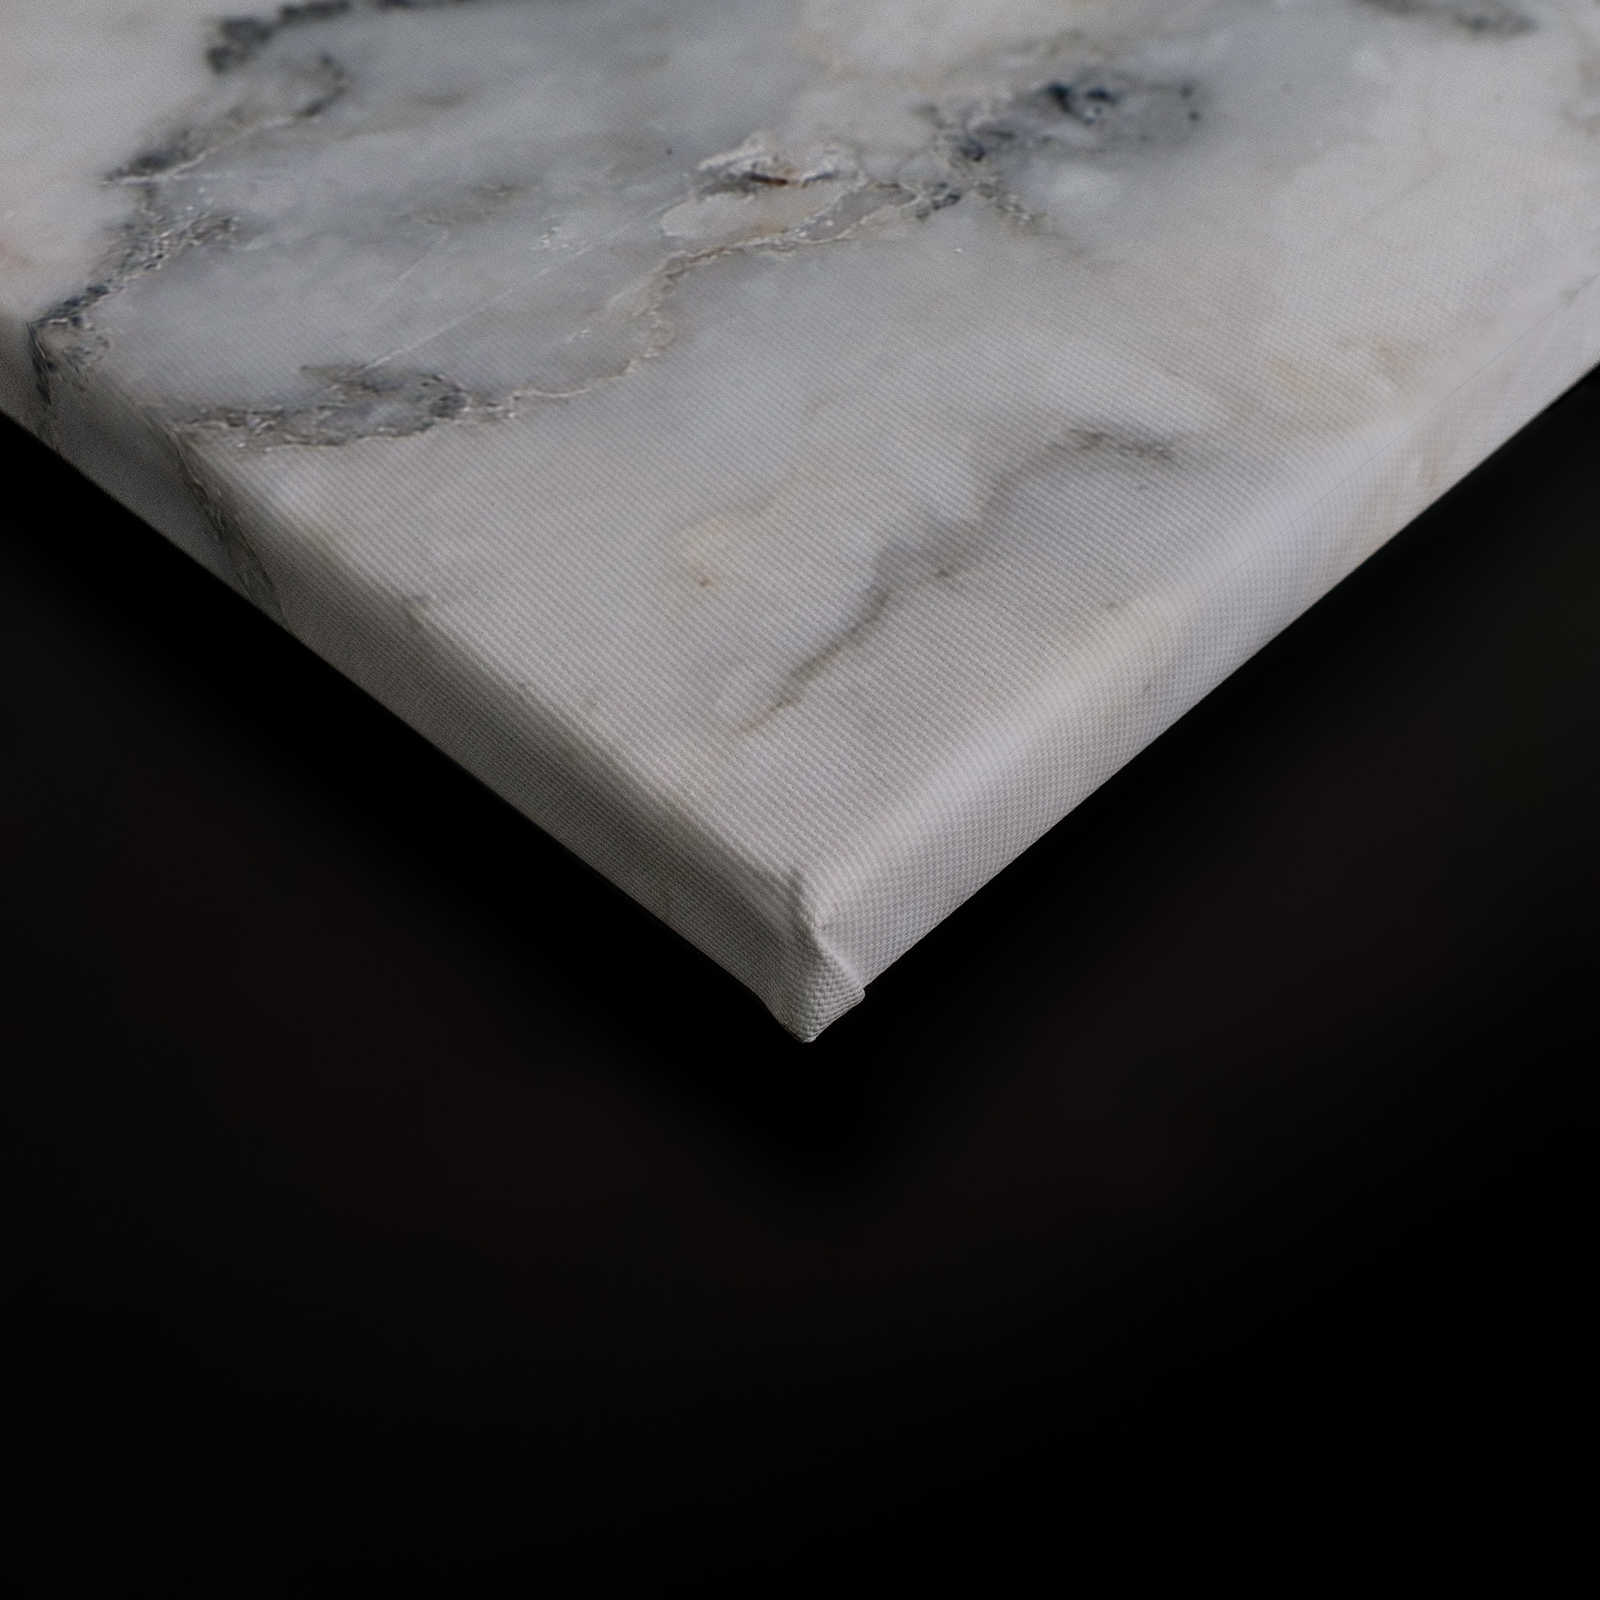             Tableau toile marbre réaliste & grand format - 0,90 m x 0,60 m
        